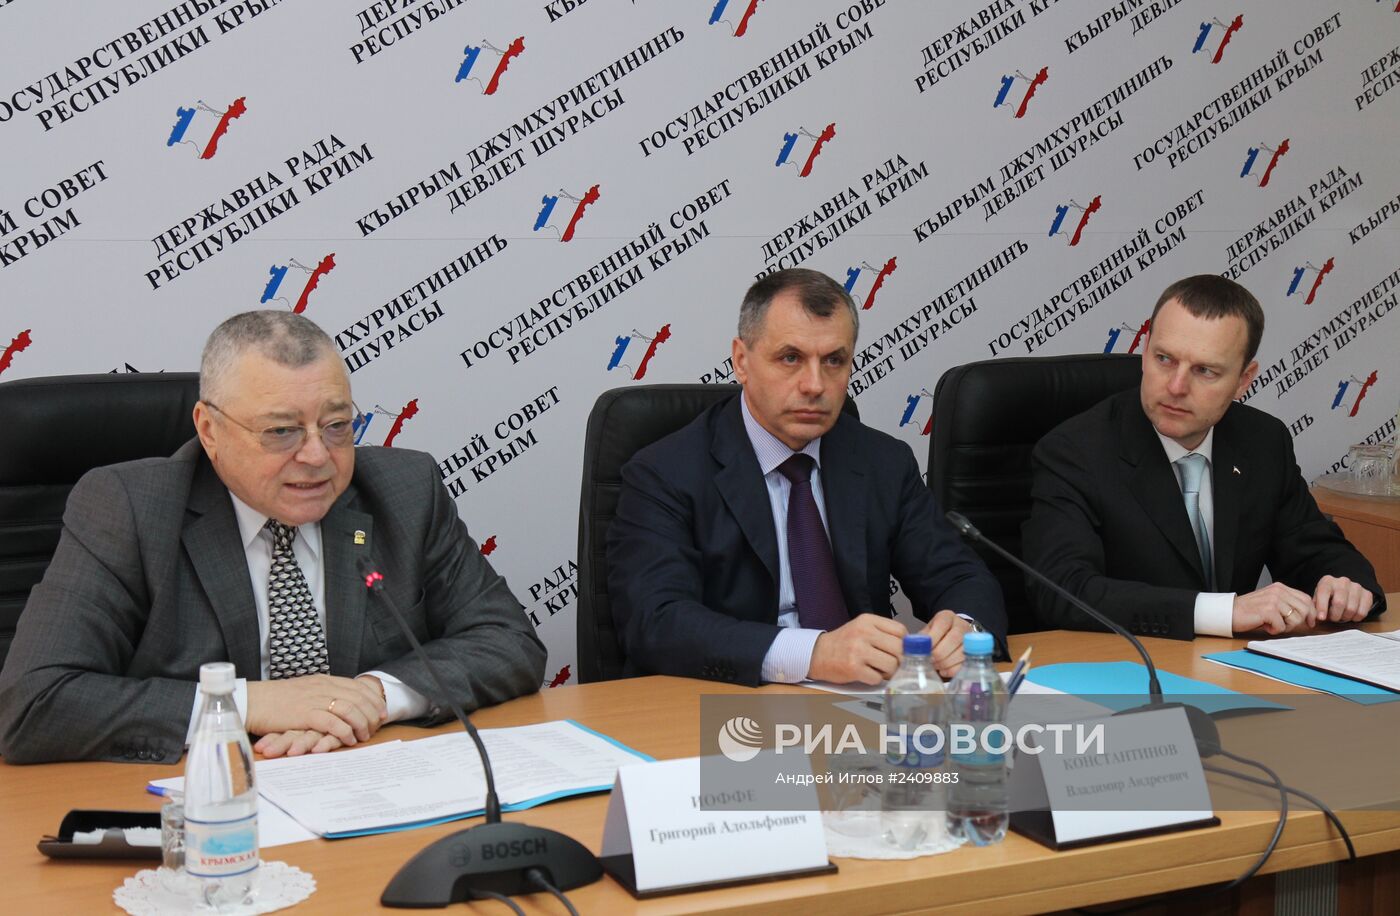 Заседание комиссии по разработке проекта новой конституции Республики Крым